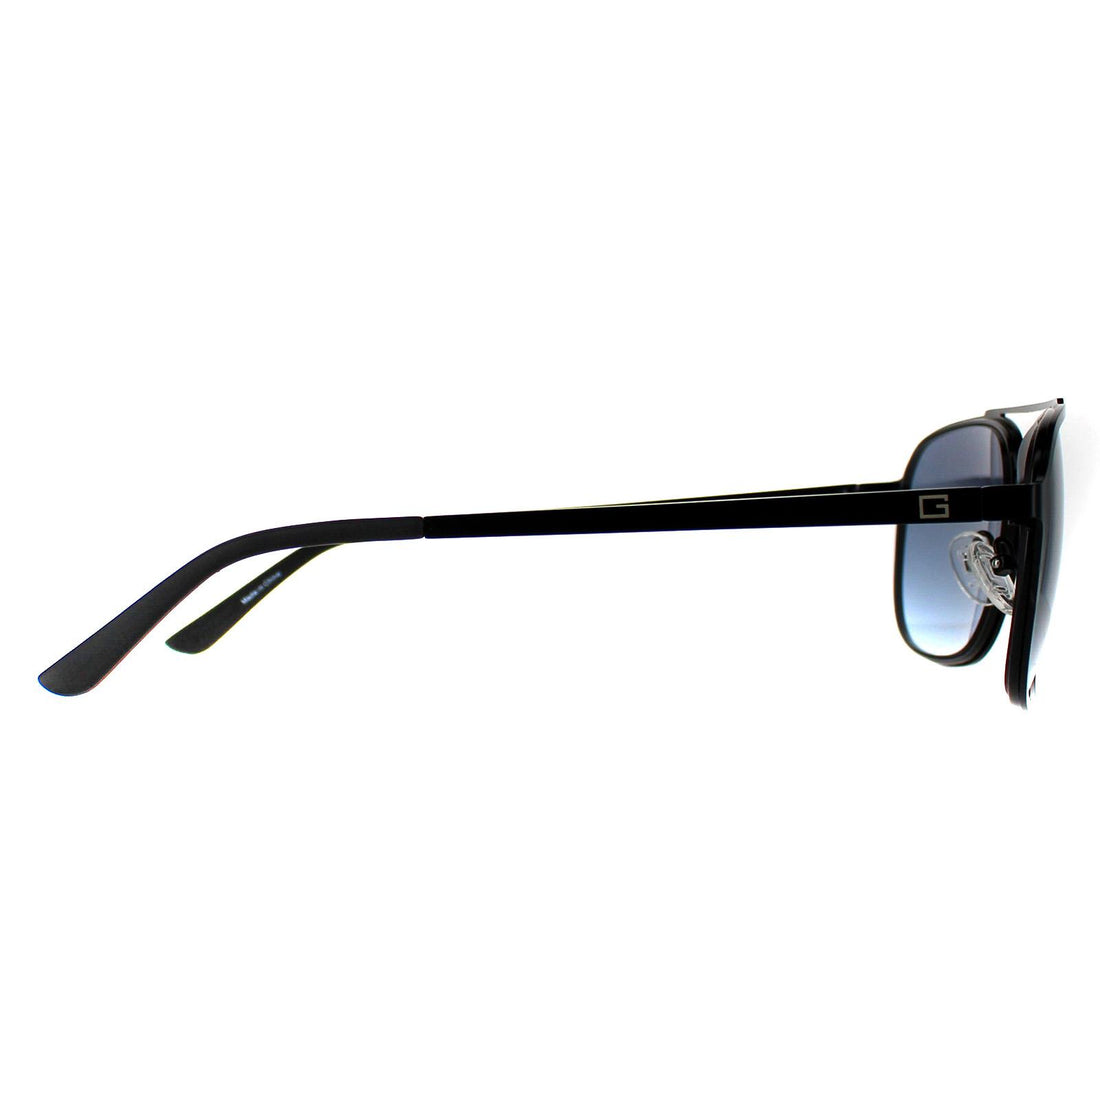 Guess Sunglasses GF0184 02W Matte Black Blue Gradient